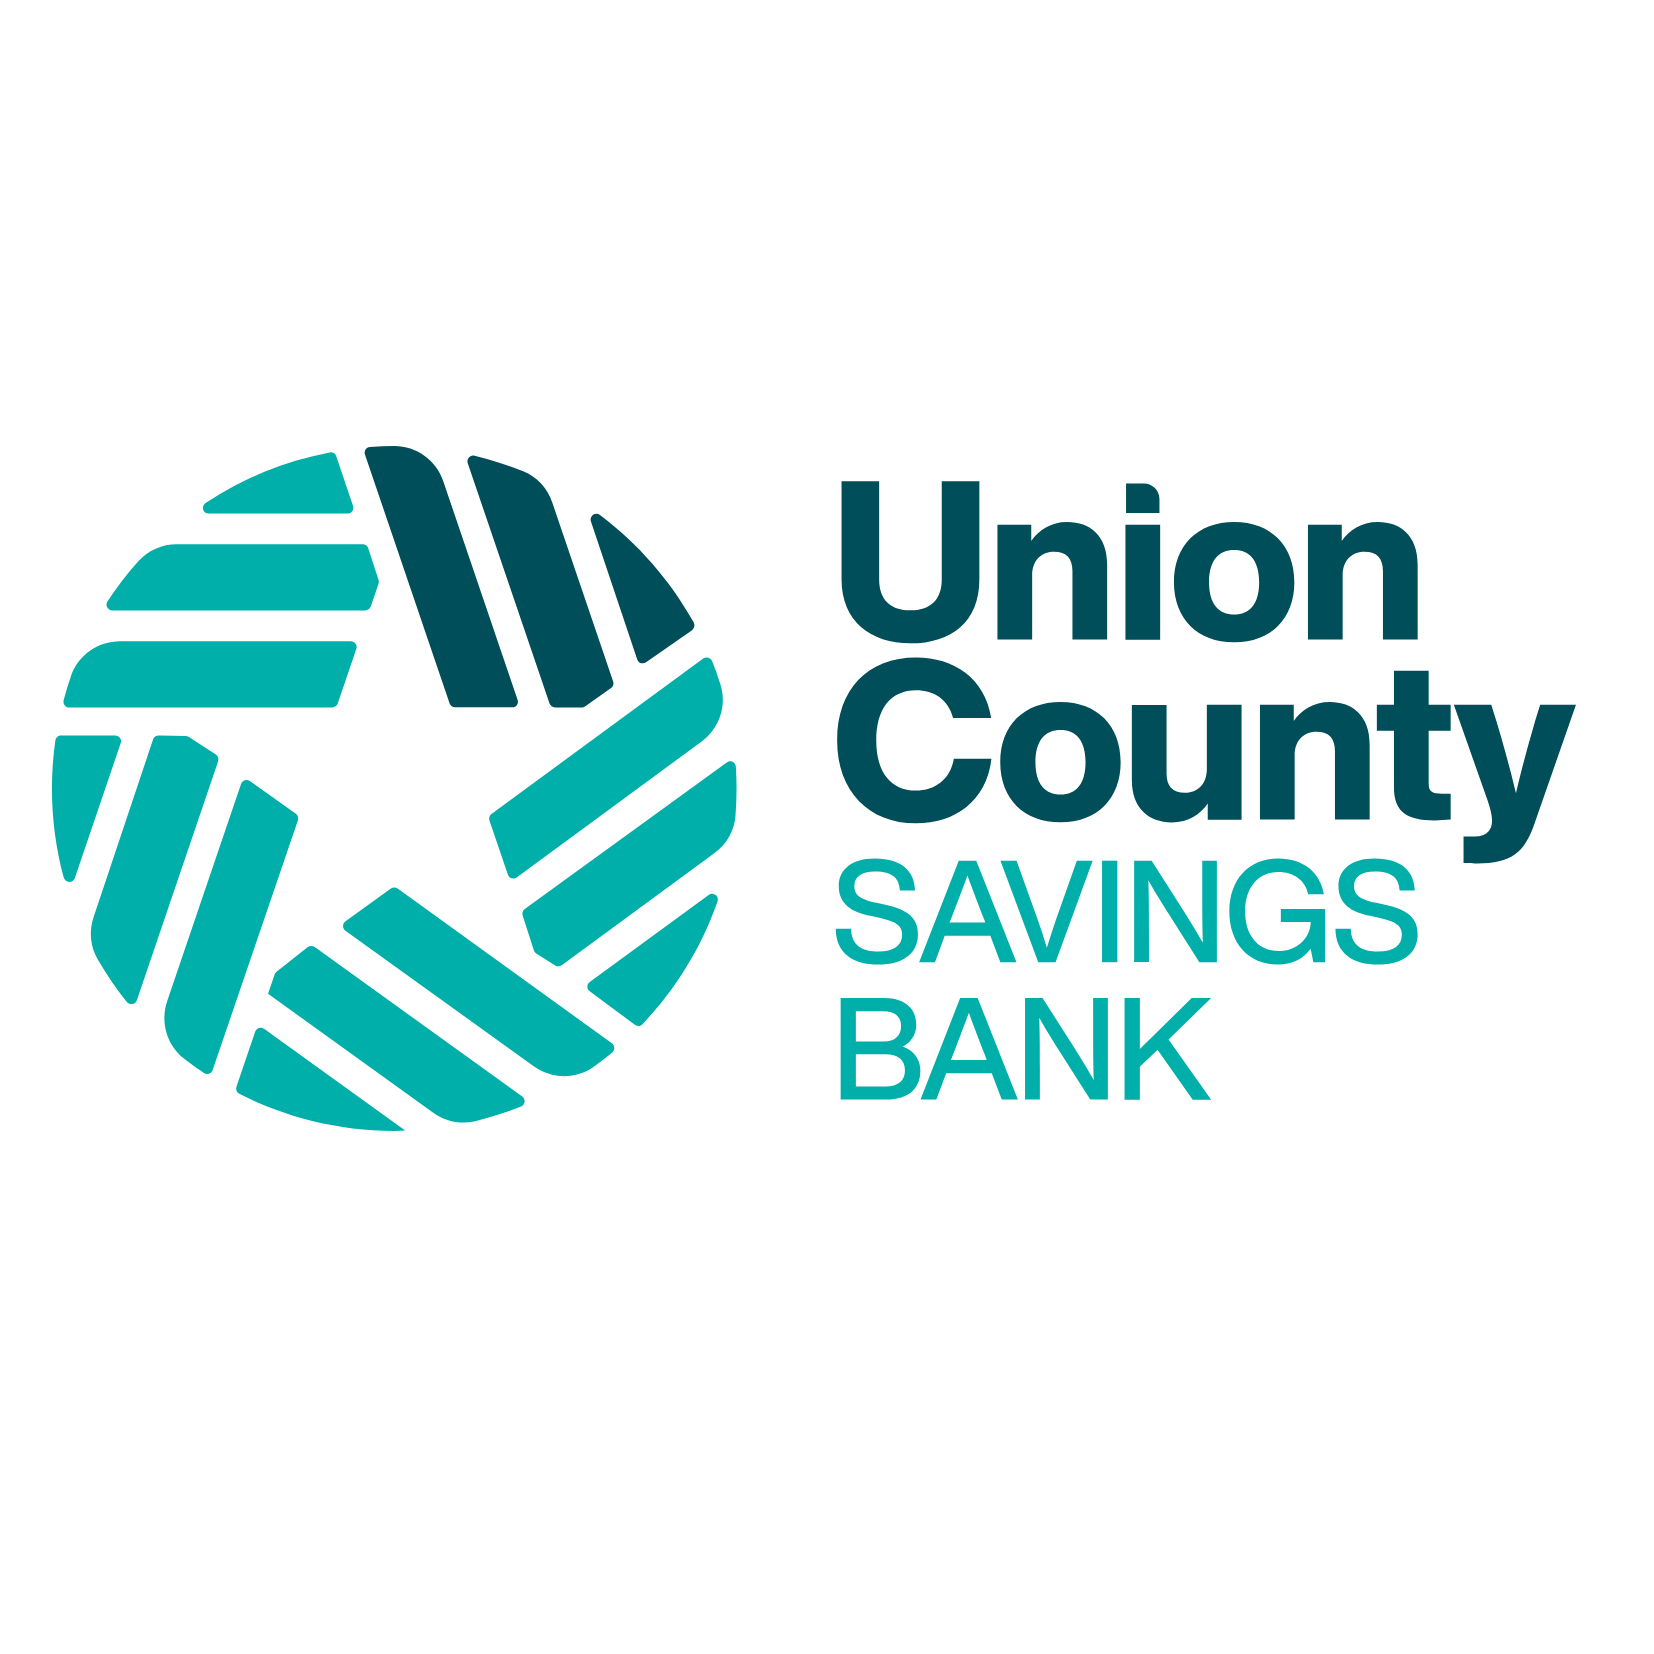 Union County Savings Bank